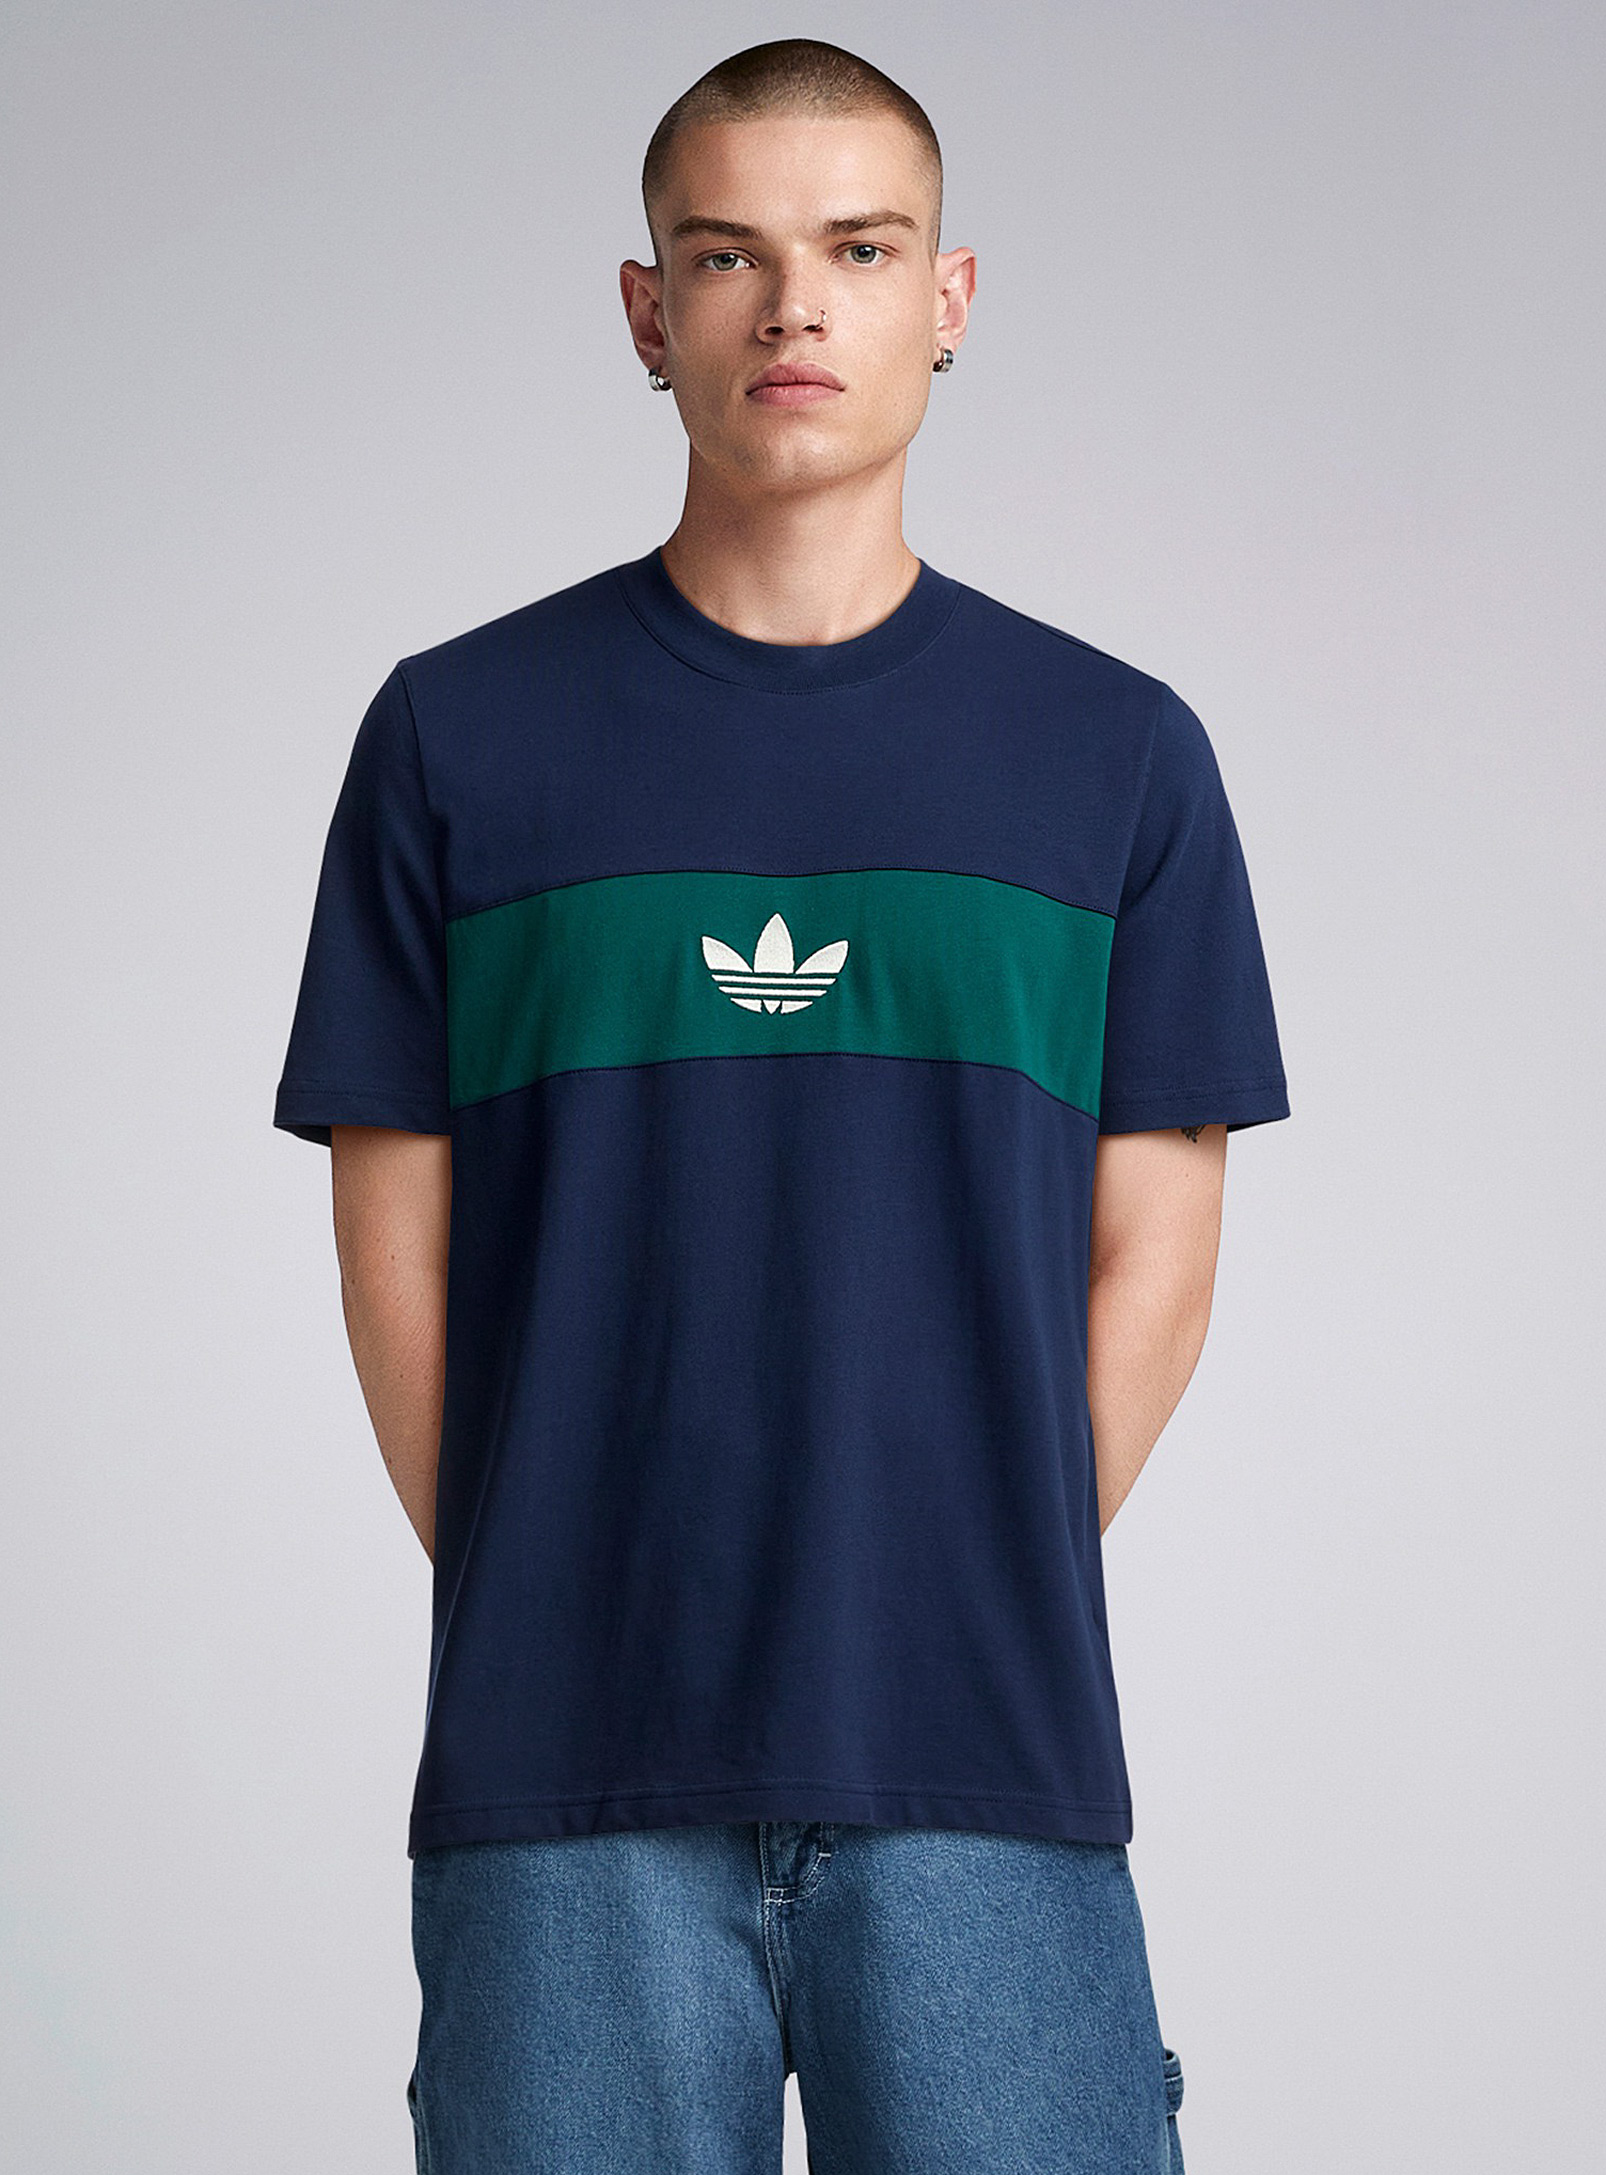 Adidas - Men's Trefoil colour-block T-shirt